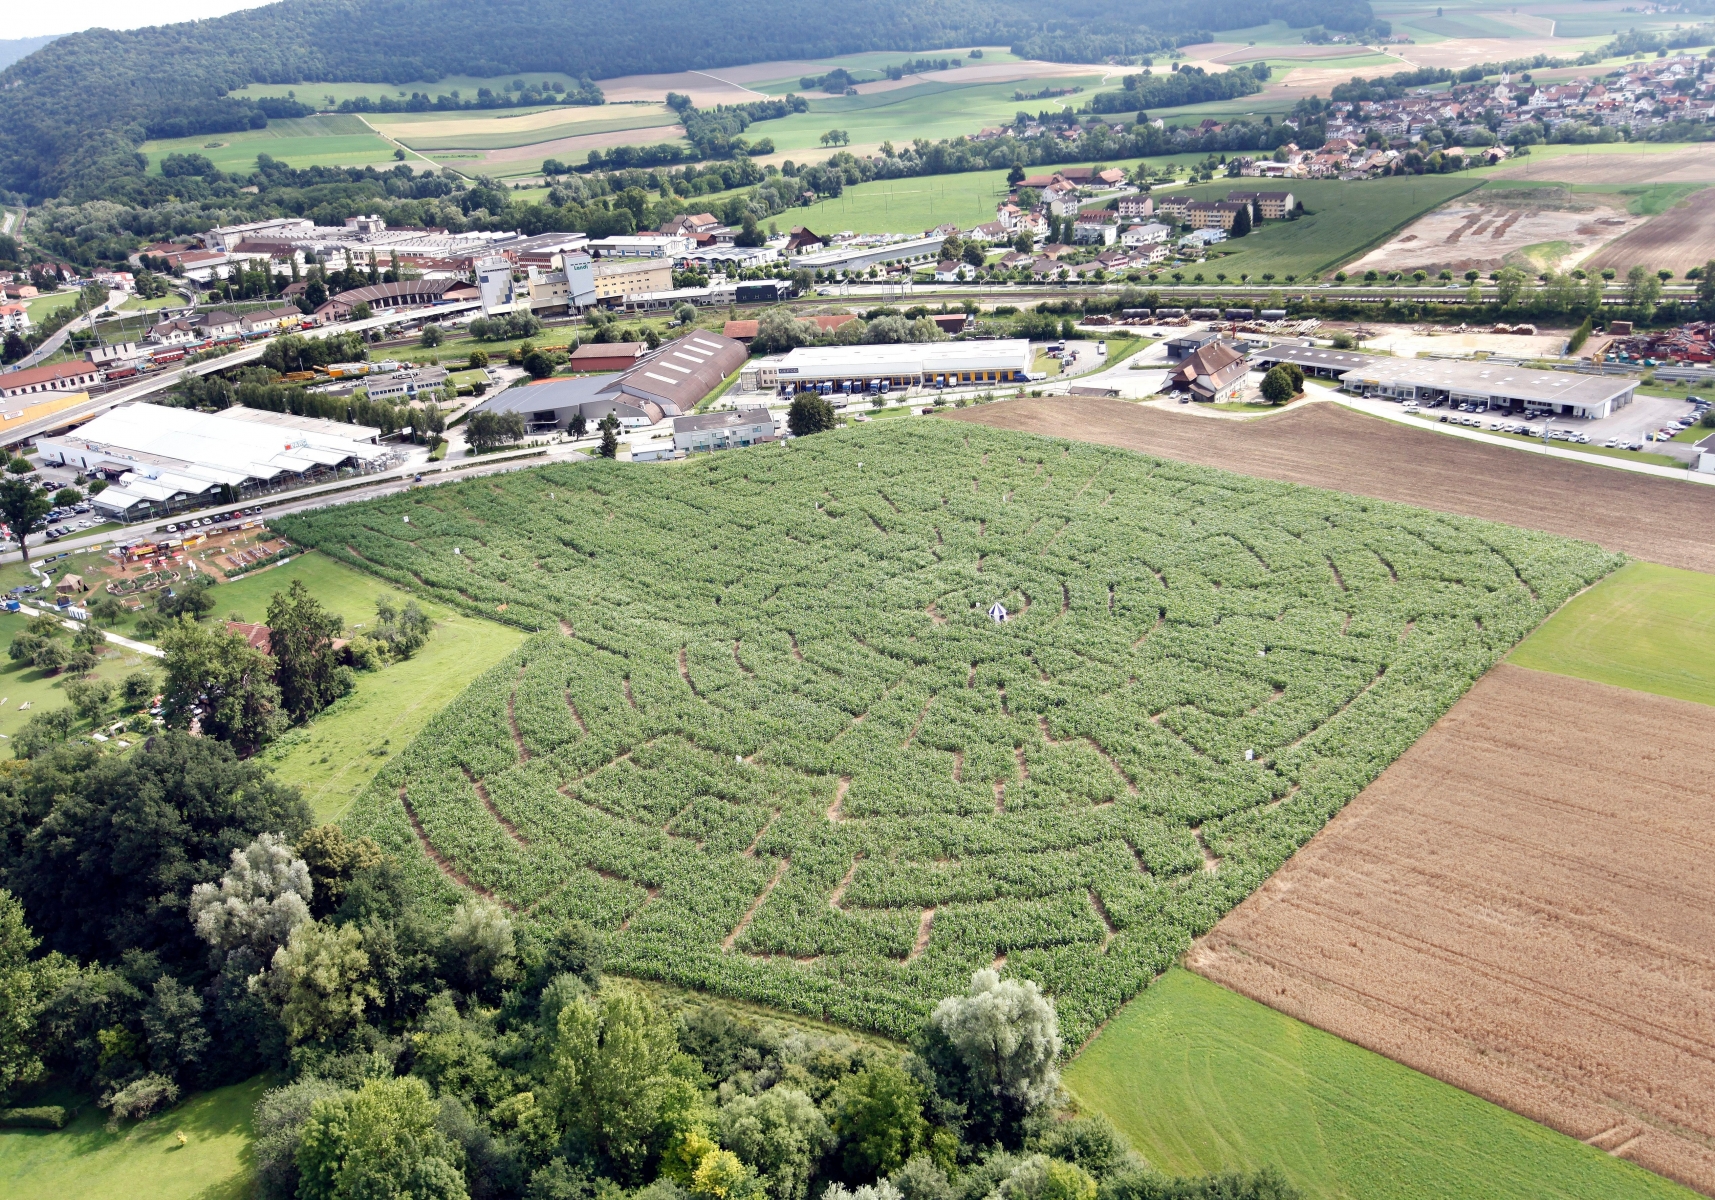 Loisirs. Swiss Labyrinthe a ouvert ses portes aujourd'hui samedi 23 juillet et sera ouvert jusqu'au 25 septembre 2011 à Delémont. Dessiné dans un champ de maïs et grand comme huit terrains de football cette attraction est la plus imposante du genre en Suisse.   (Roger Meier/Bist)